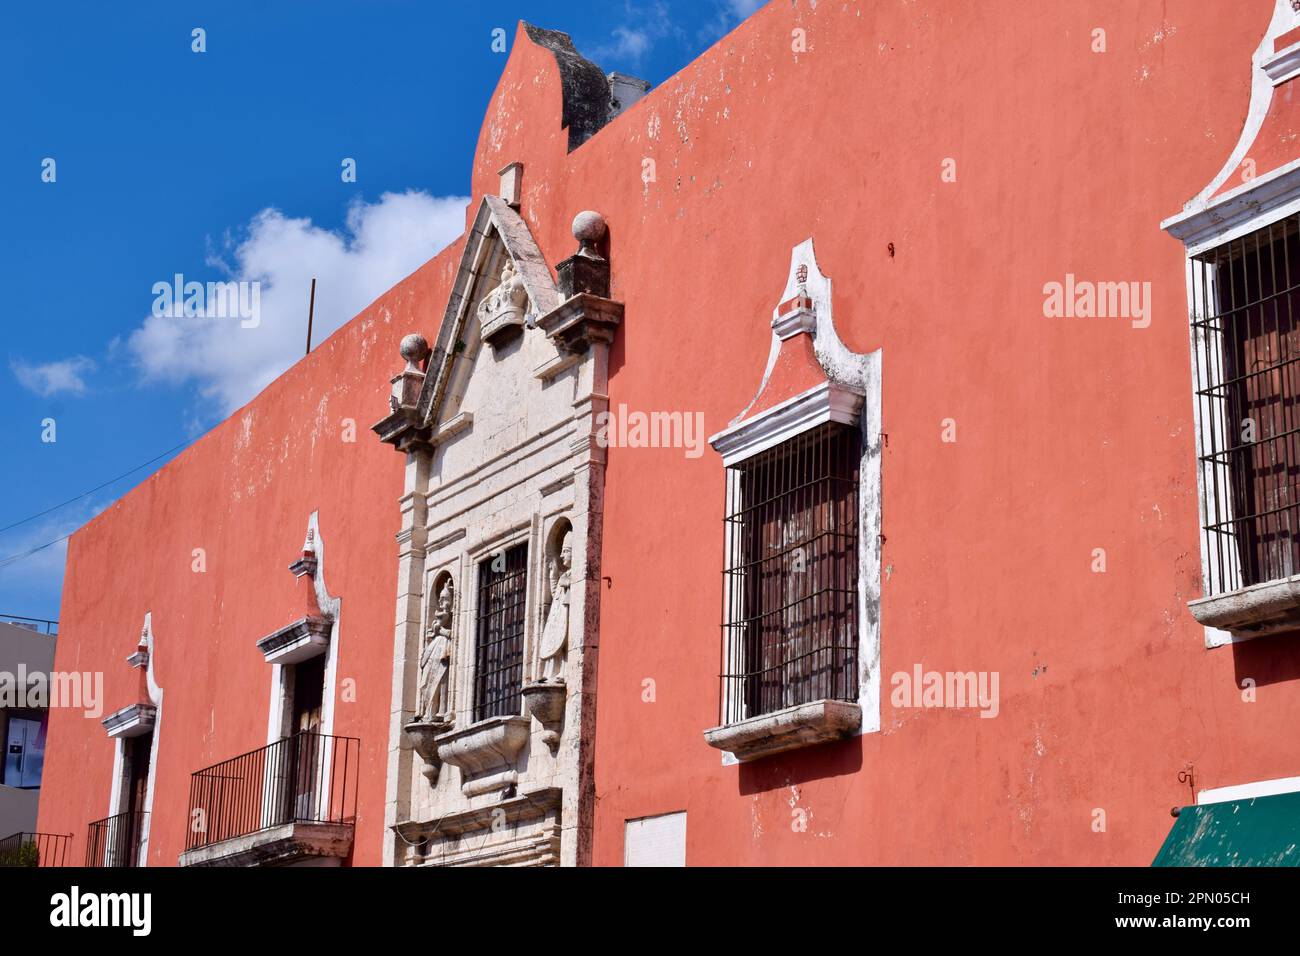 La facciata di un edificio coloniale, con statue, nel centro storico di Merida, Yucatan, Messico. Foto Stock